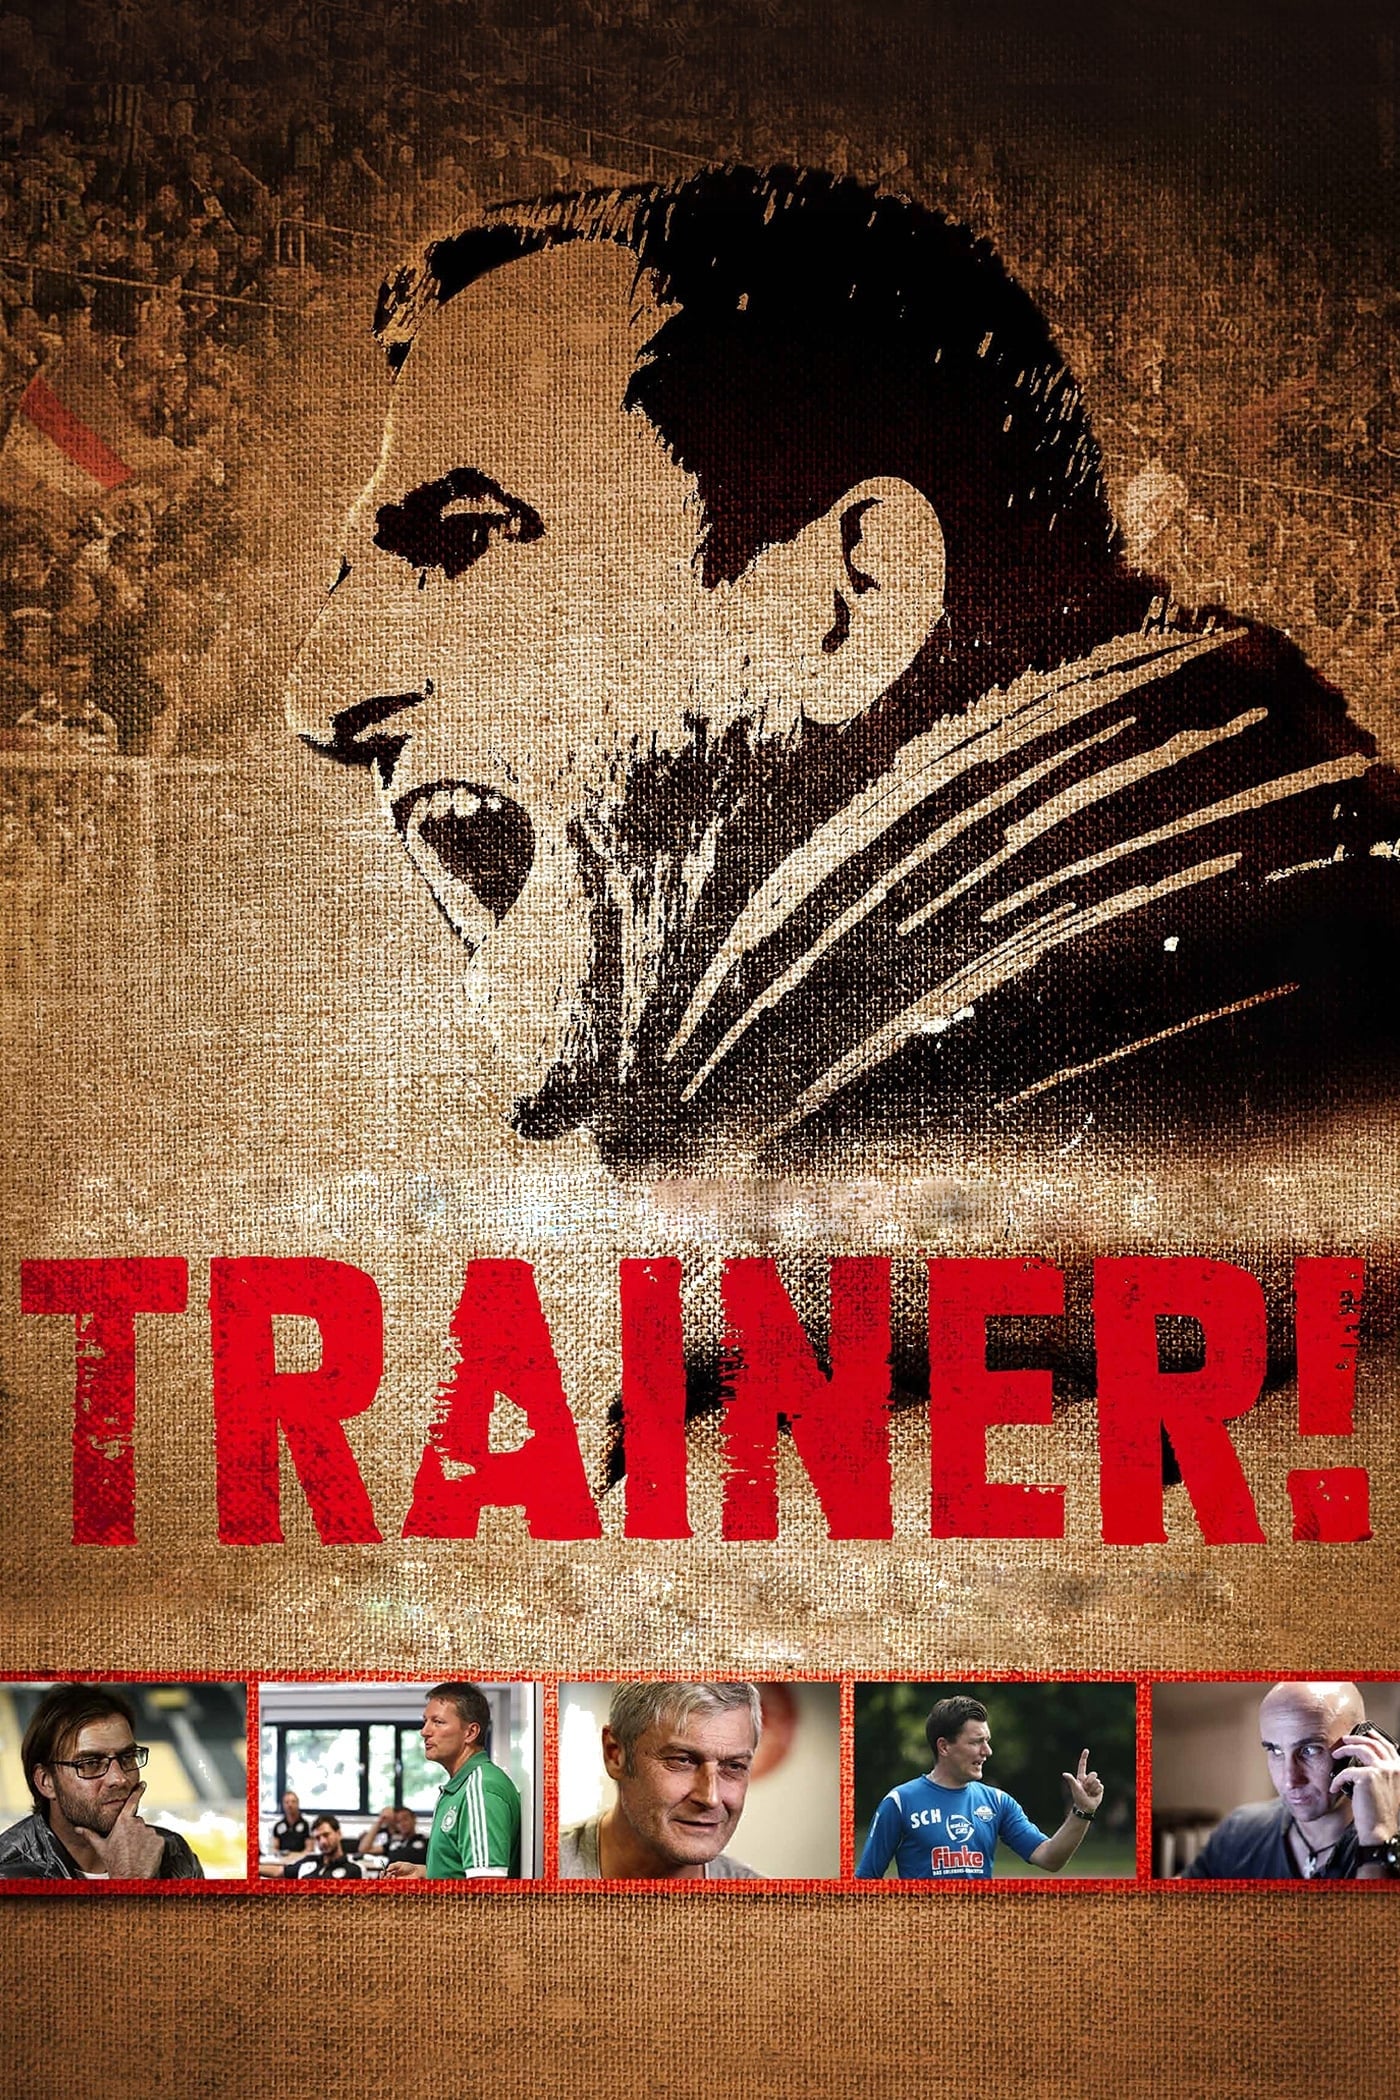 Trainer! (2013)